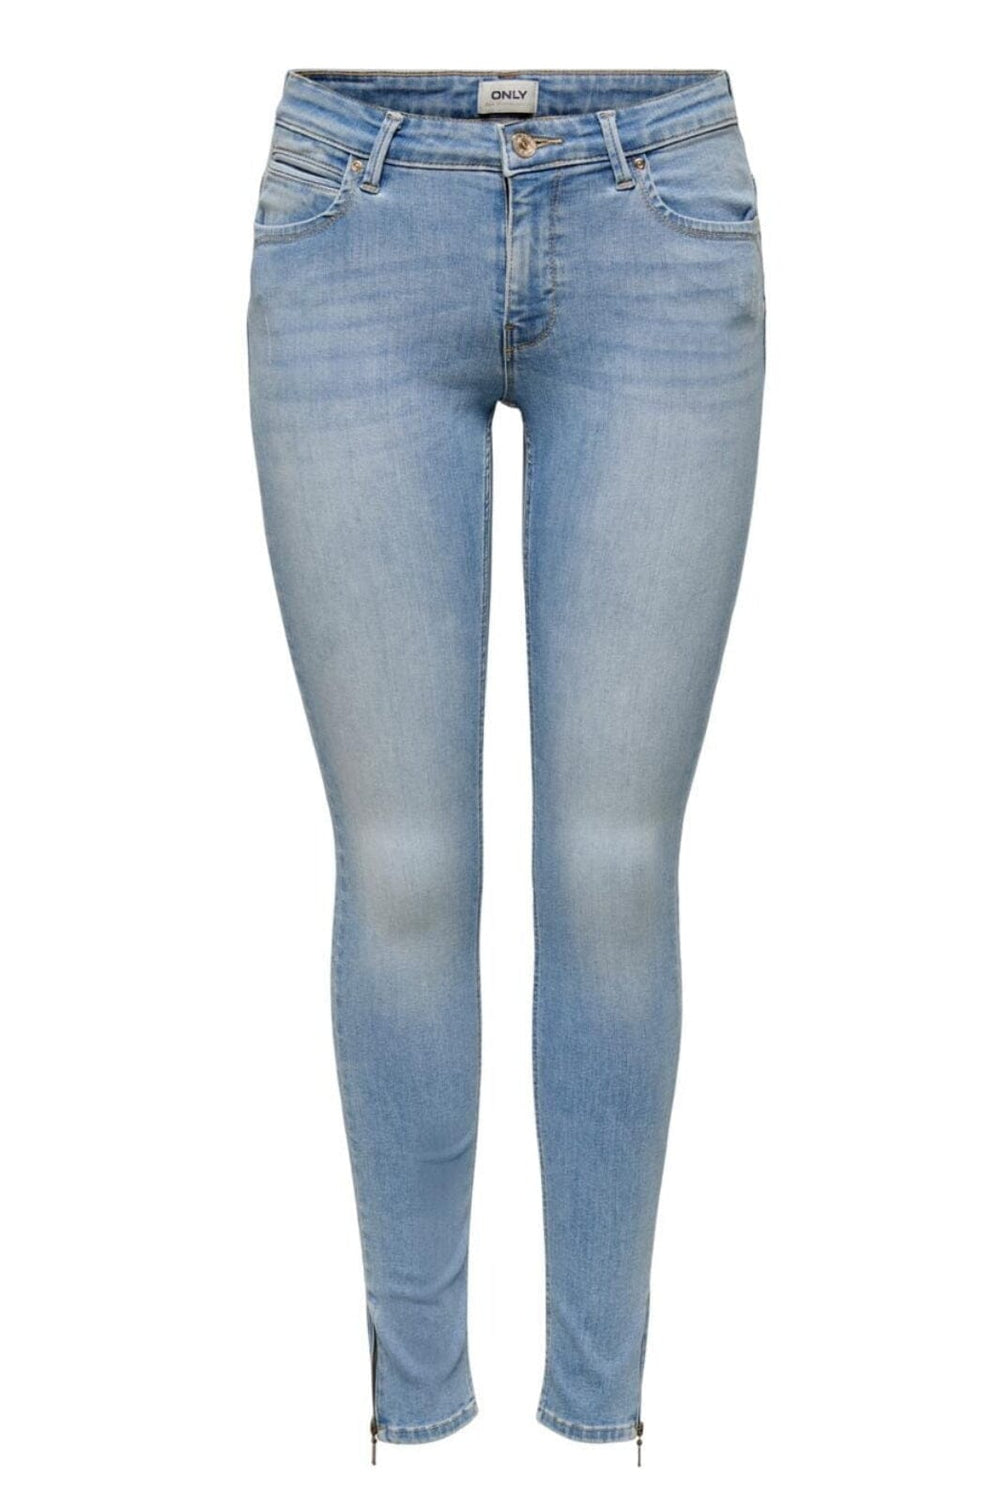 Only - Onlkendell Rg Sk - 177934 Light Blue Denim Jeans 